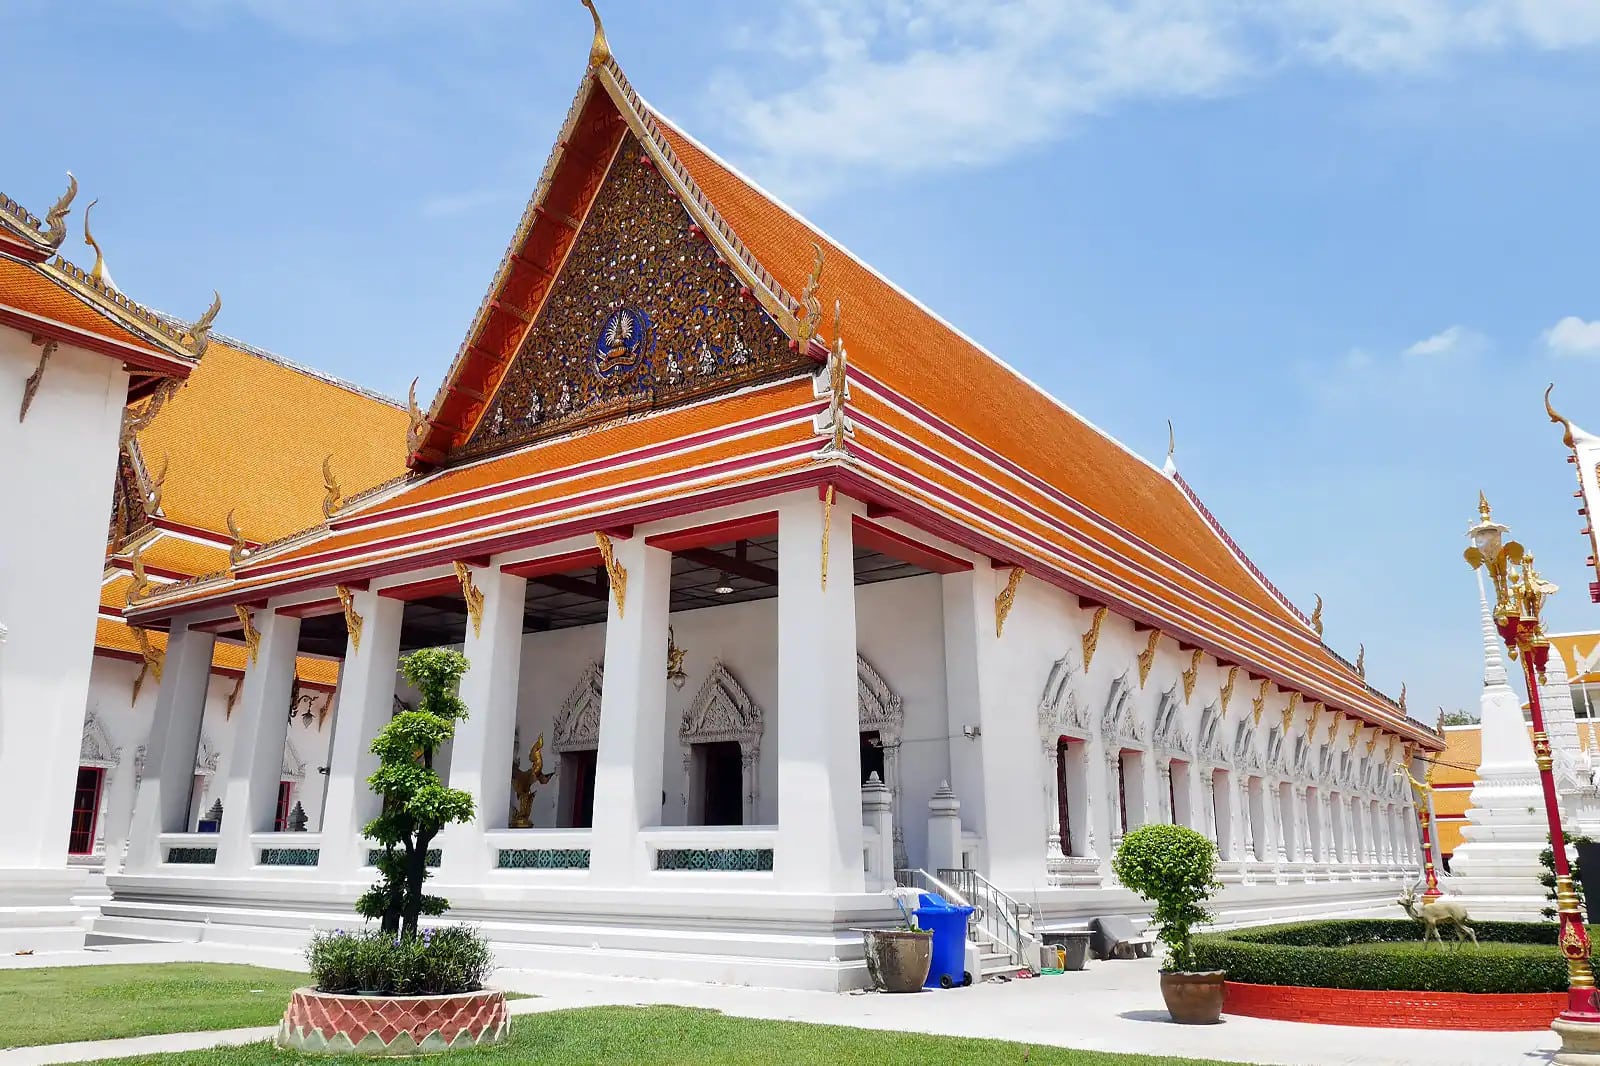 The Wat Mahathat in Bangkok